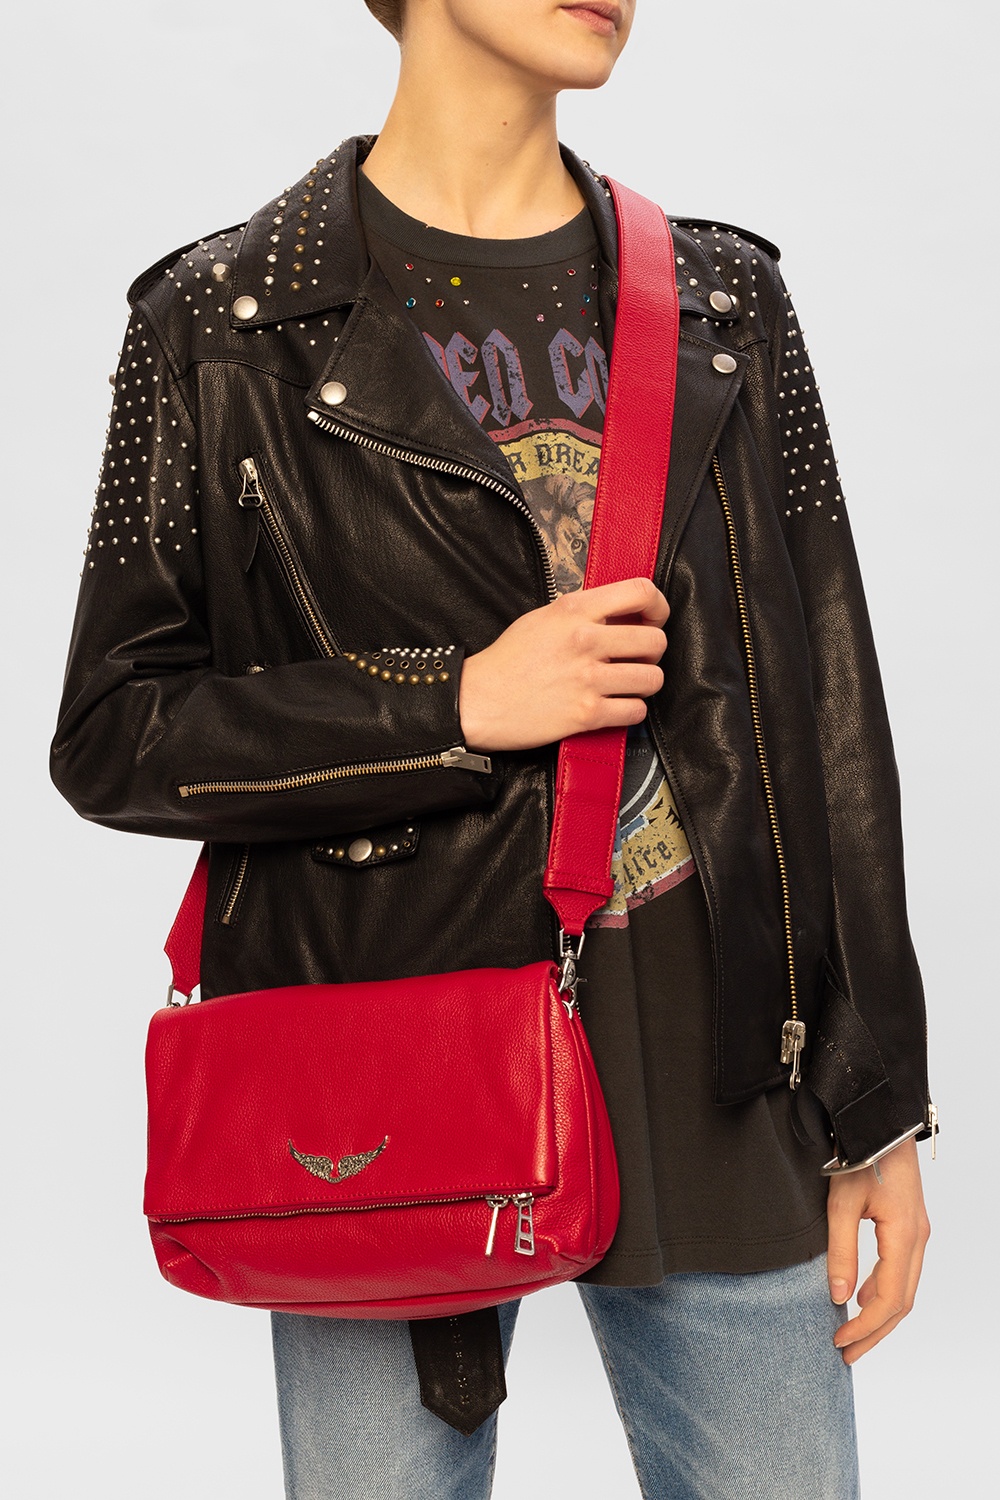 Zadig & Voltaire Rock Leather Shoulder Bag